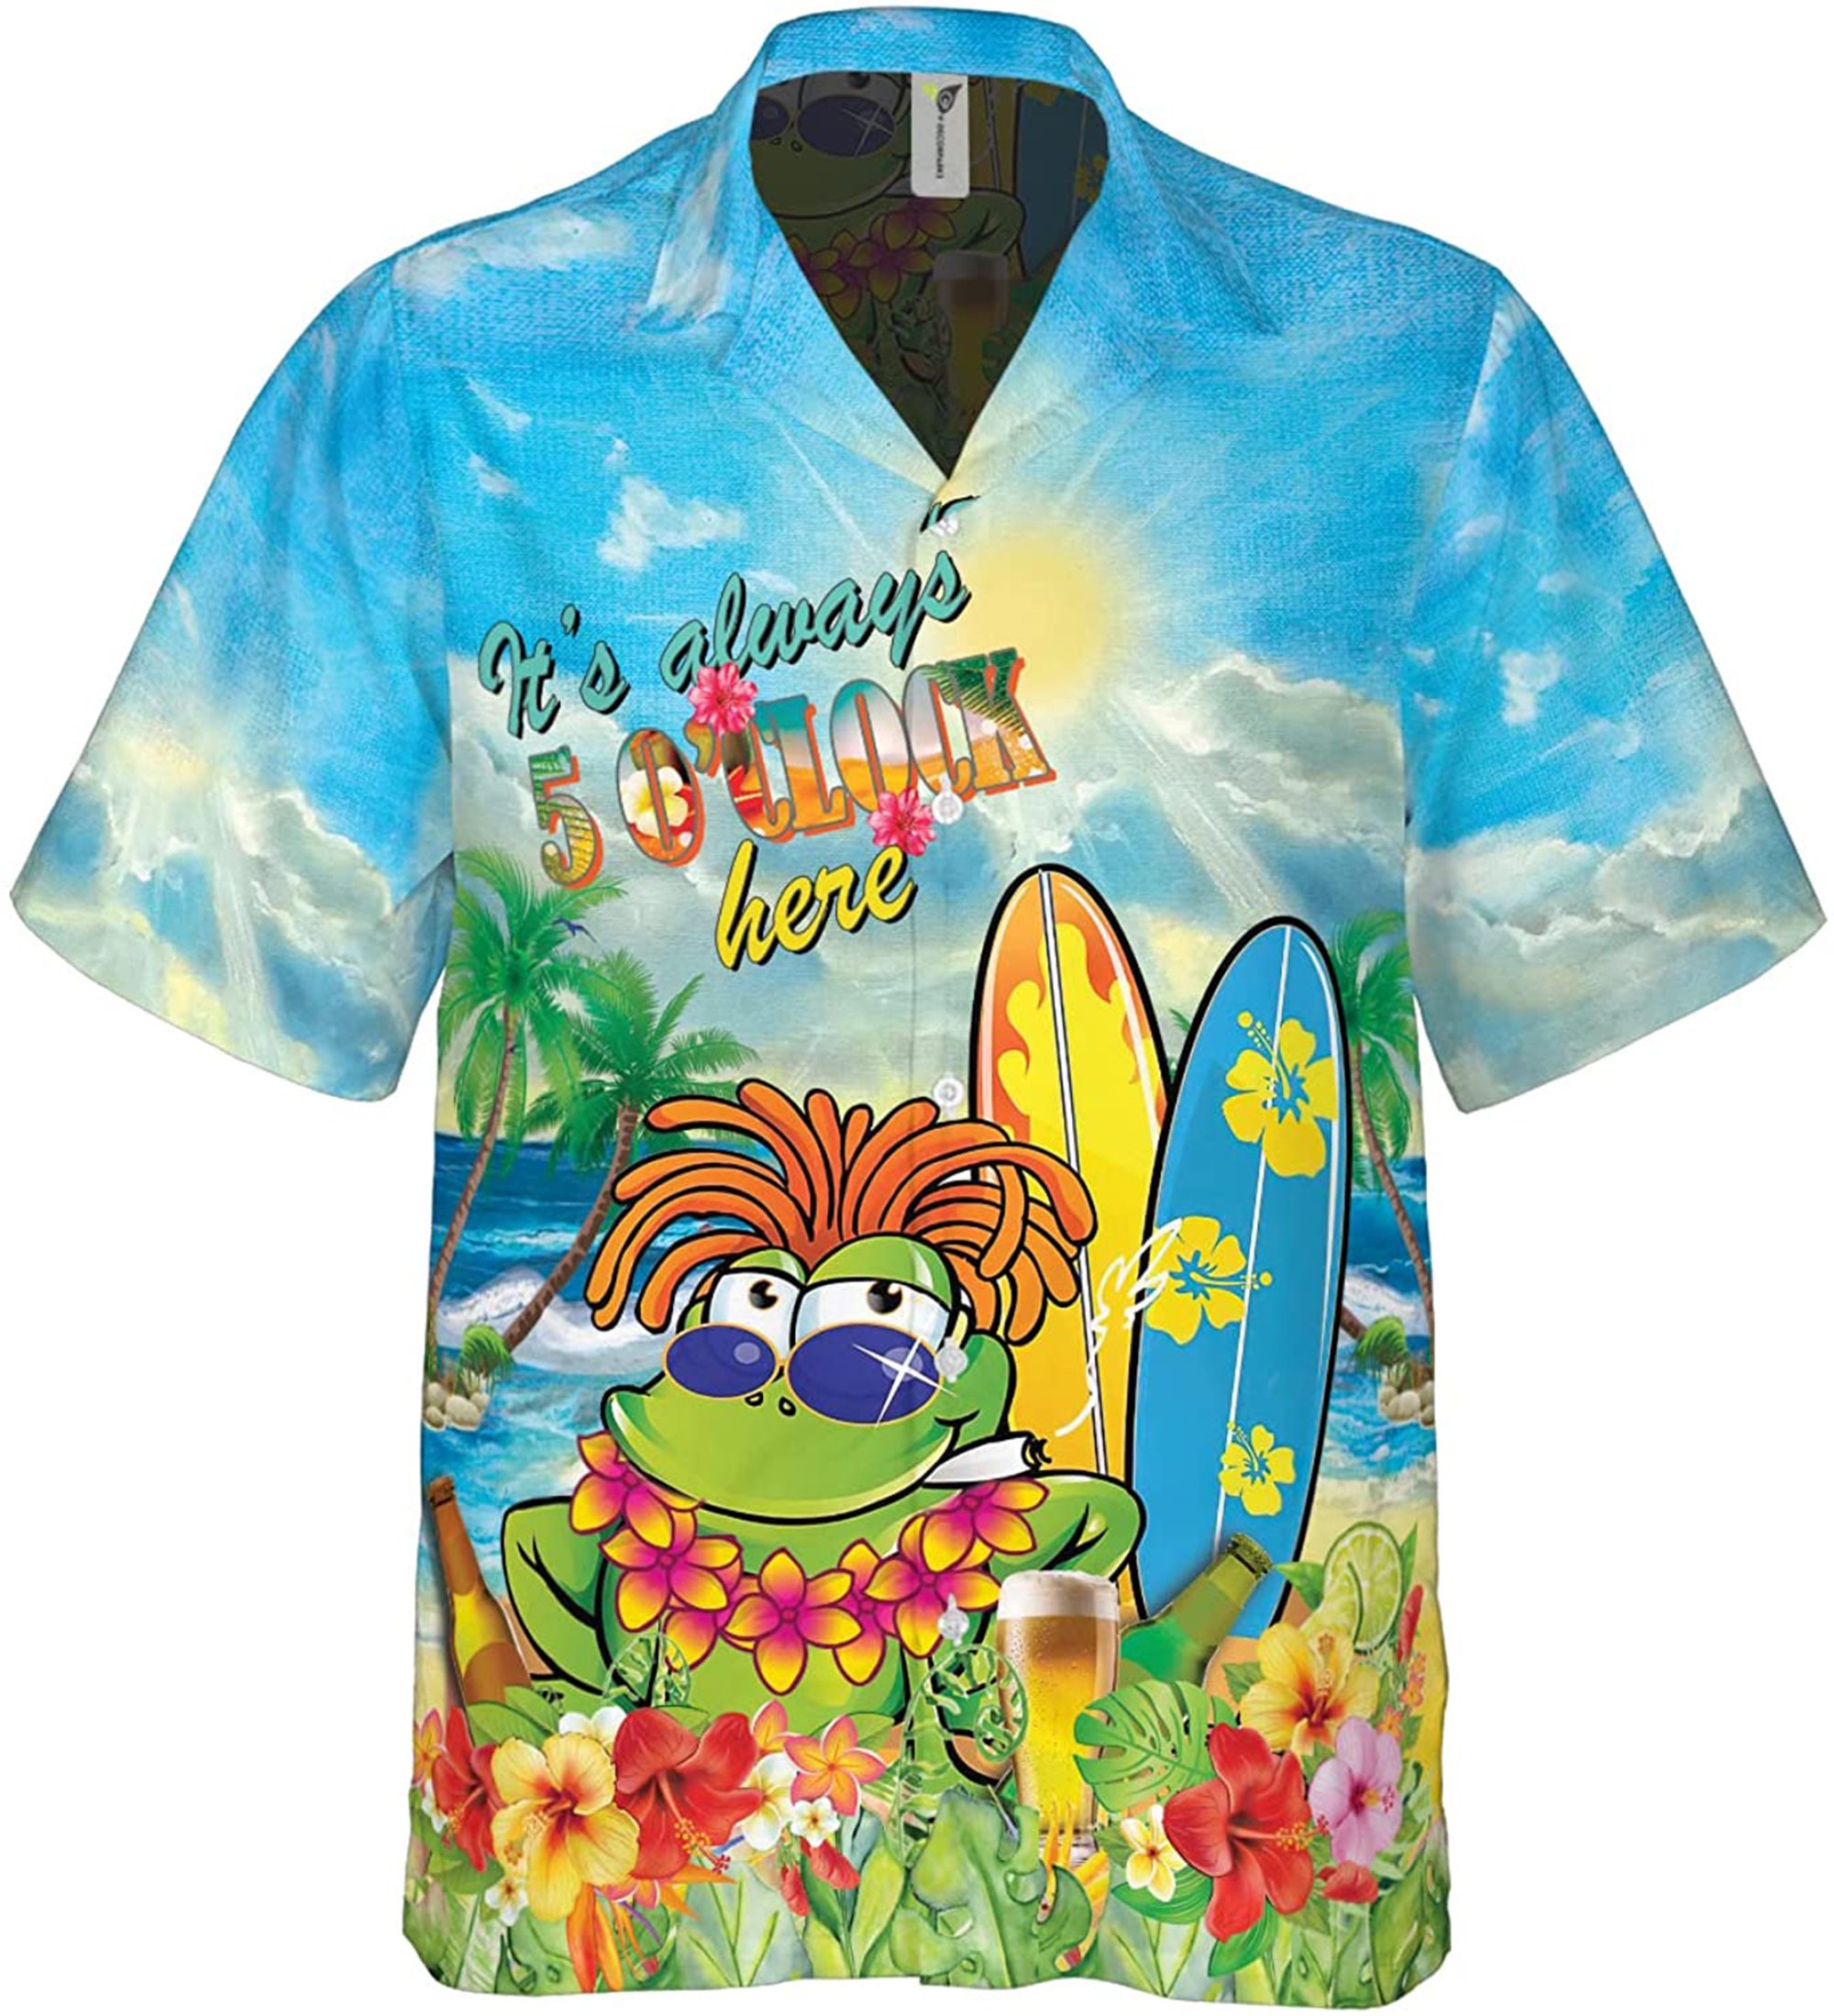 Ocean Life It’s Always 5 O’clock Here Funny Hawaiian Shirt